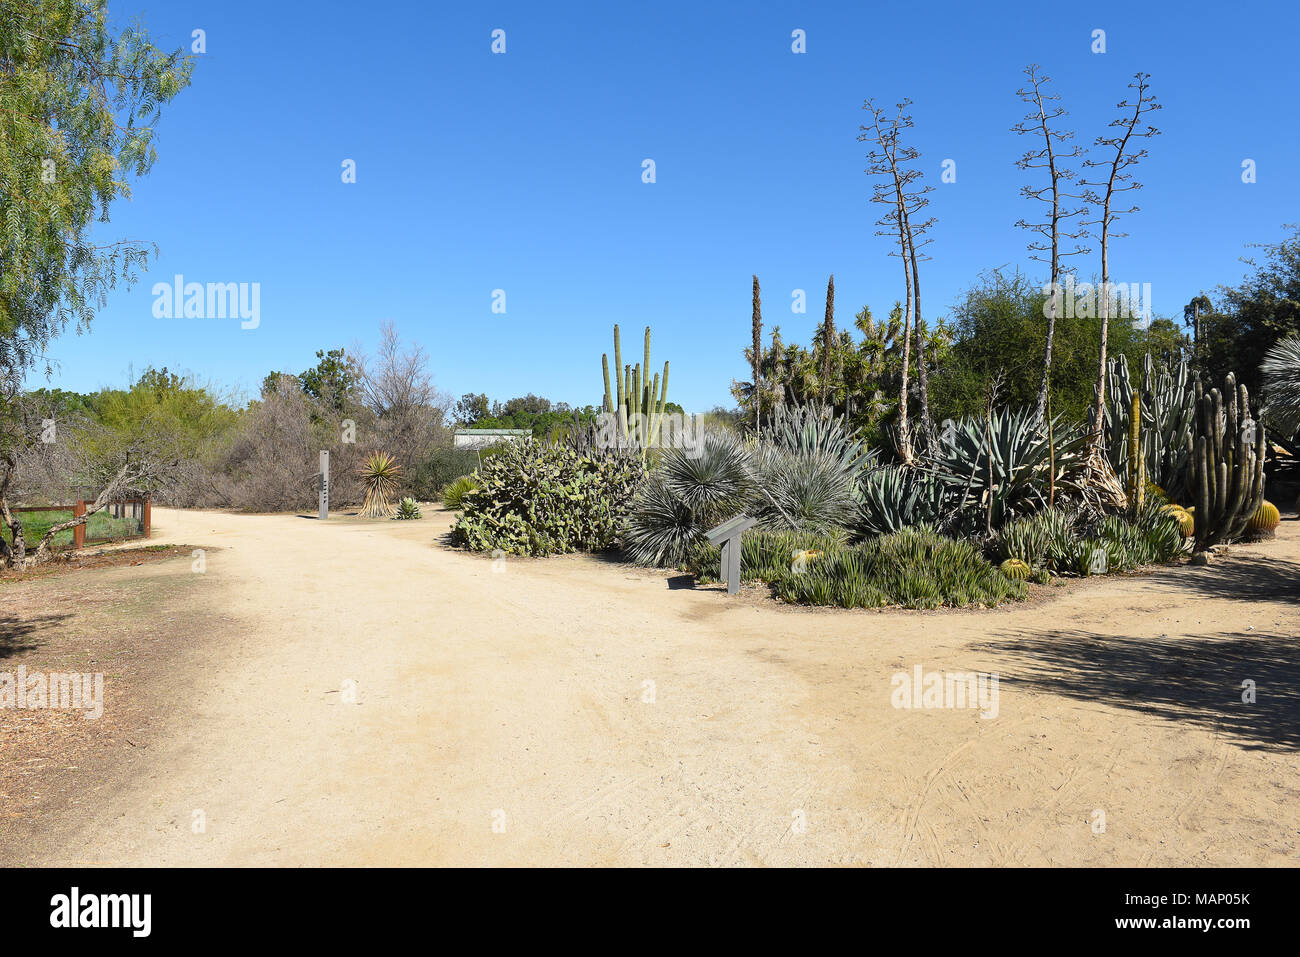 FULLERTON, CALIFORNIA - Febbraio 7, 2018: Fullerton Arboretum raccolta nel deserto. La zona offre una grande selezione di cactus e piante succulente. Foto Stock